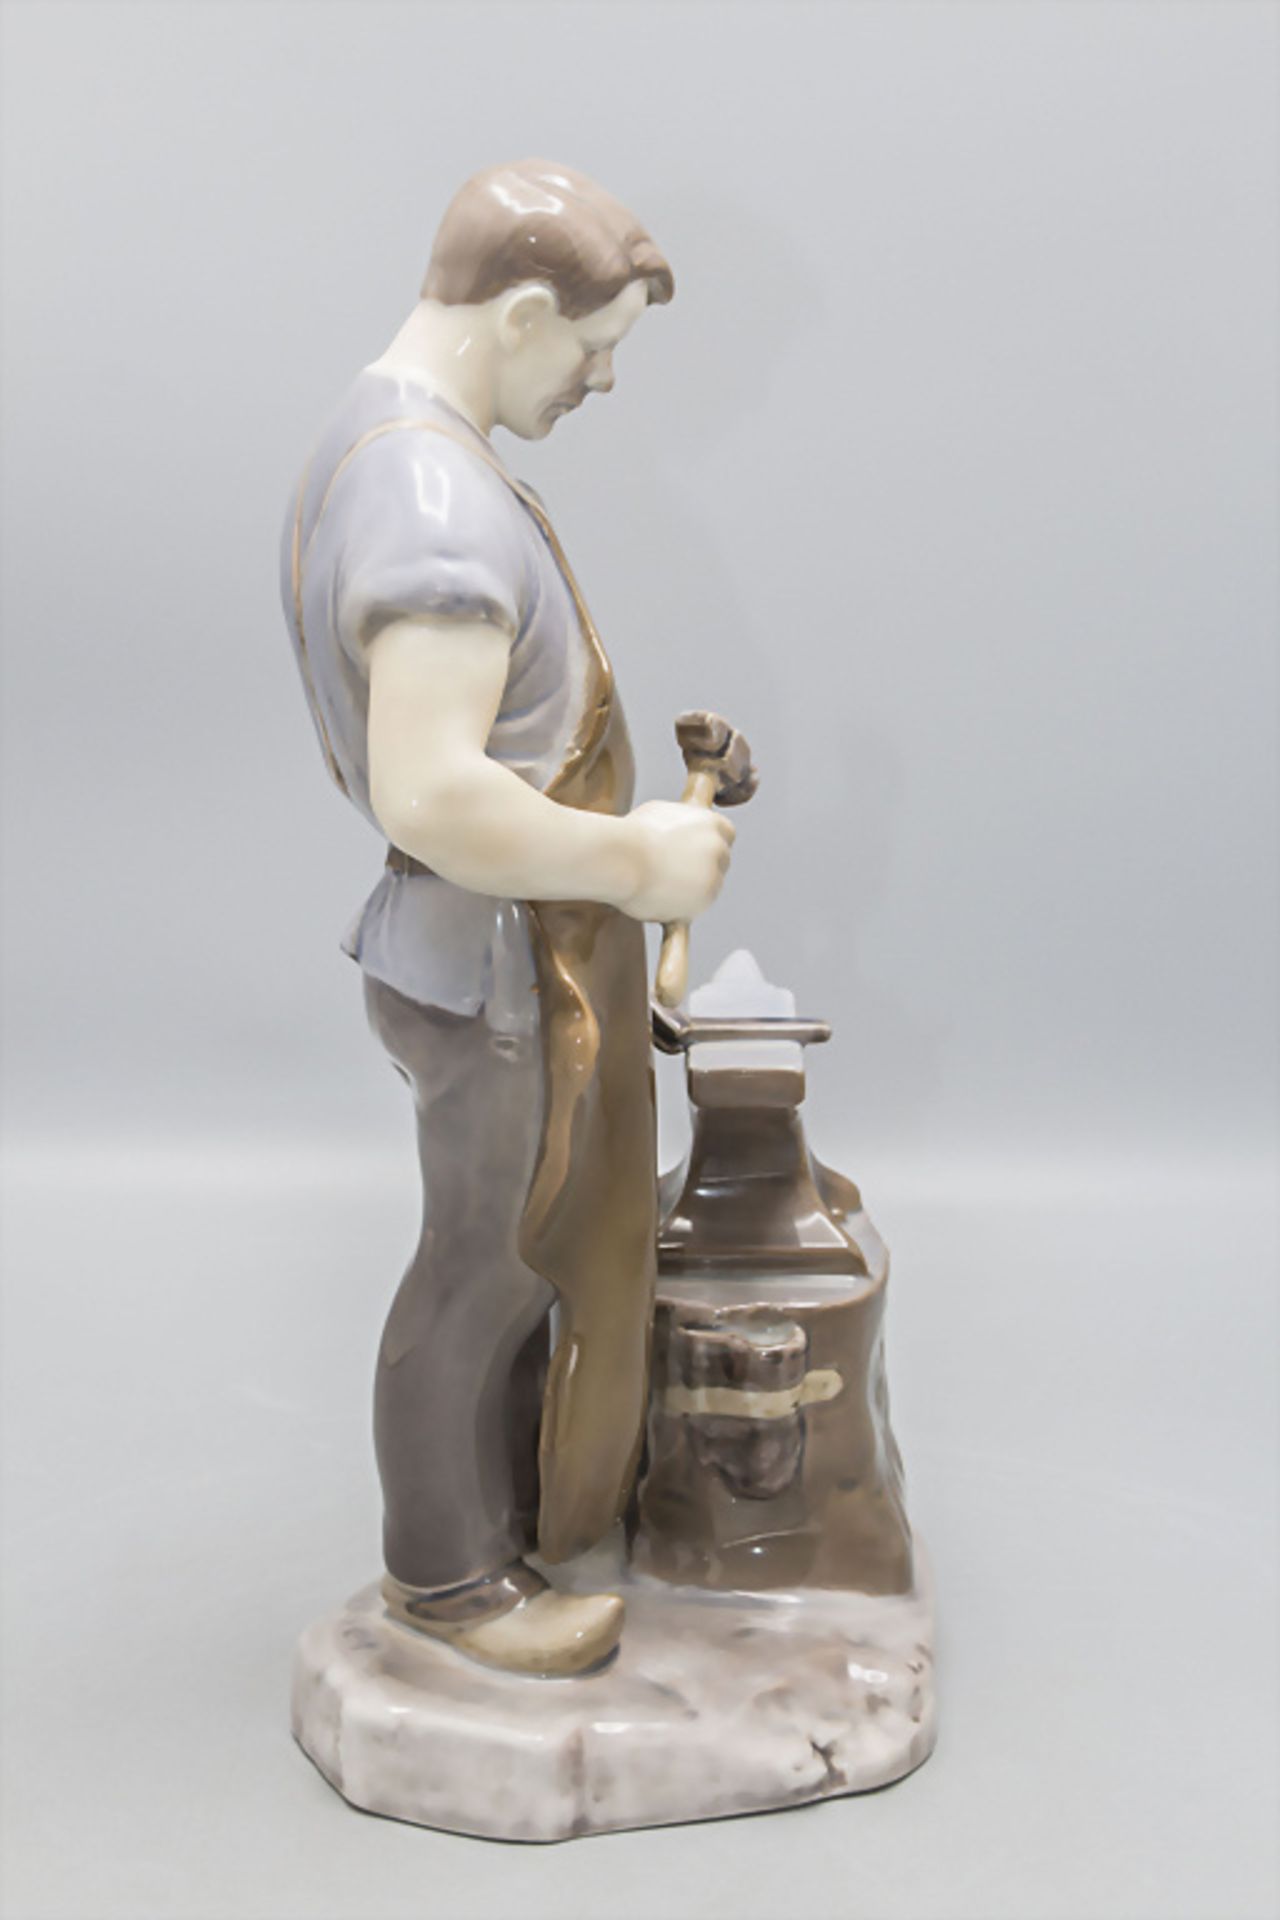 Porzellanfigur 'Schmied' / A porcelain figure of a blacksmith, Bing & Gröndahl, Copenhagen - Bild 2 aus 8